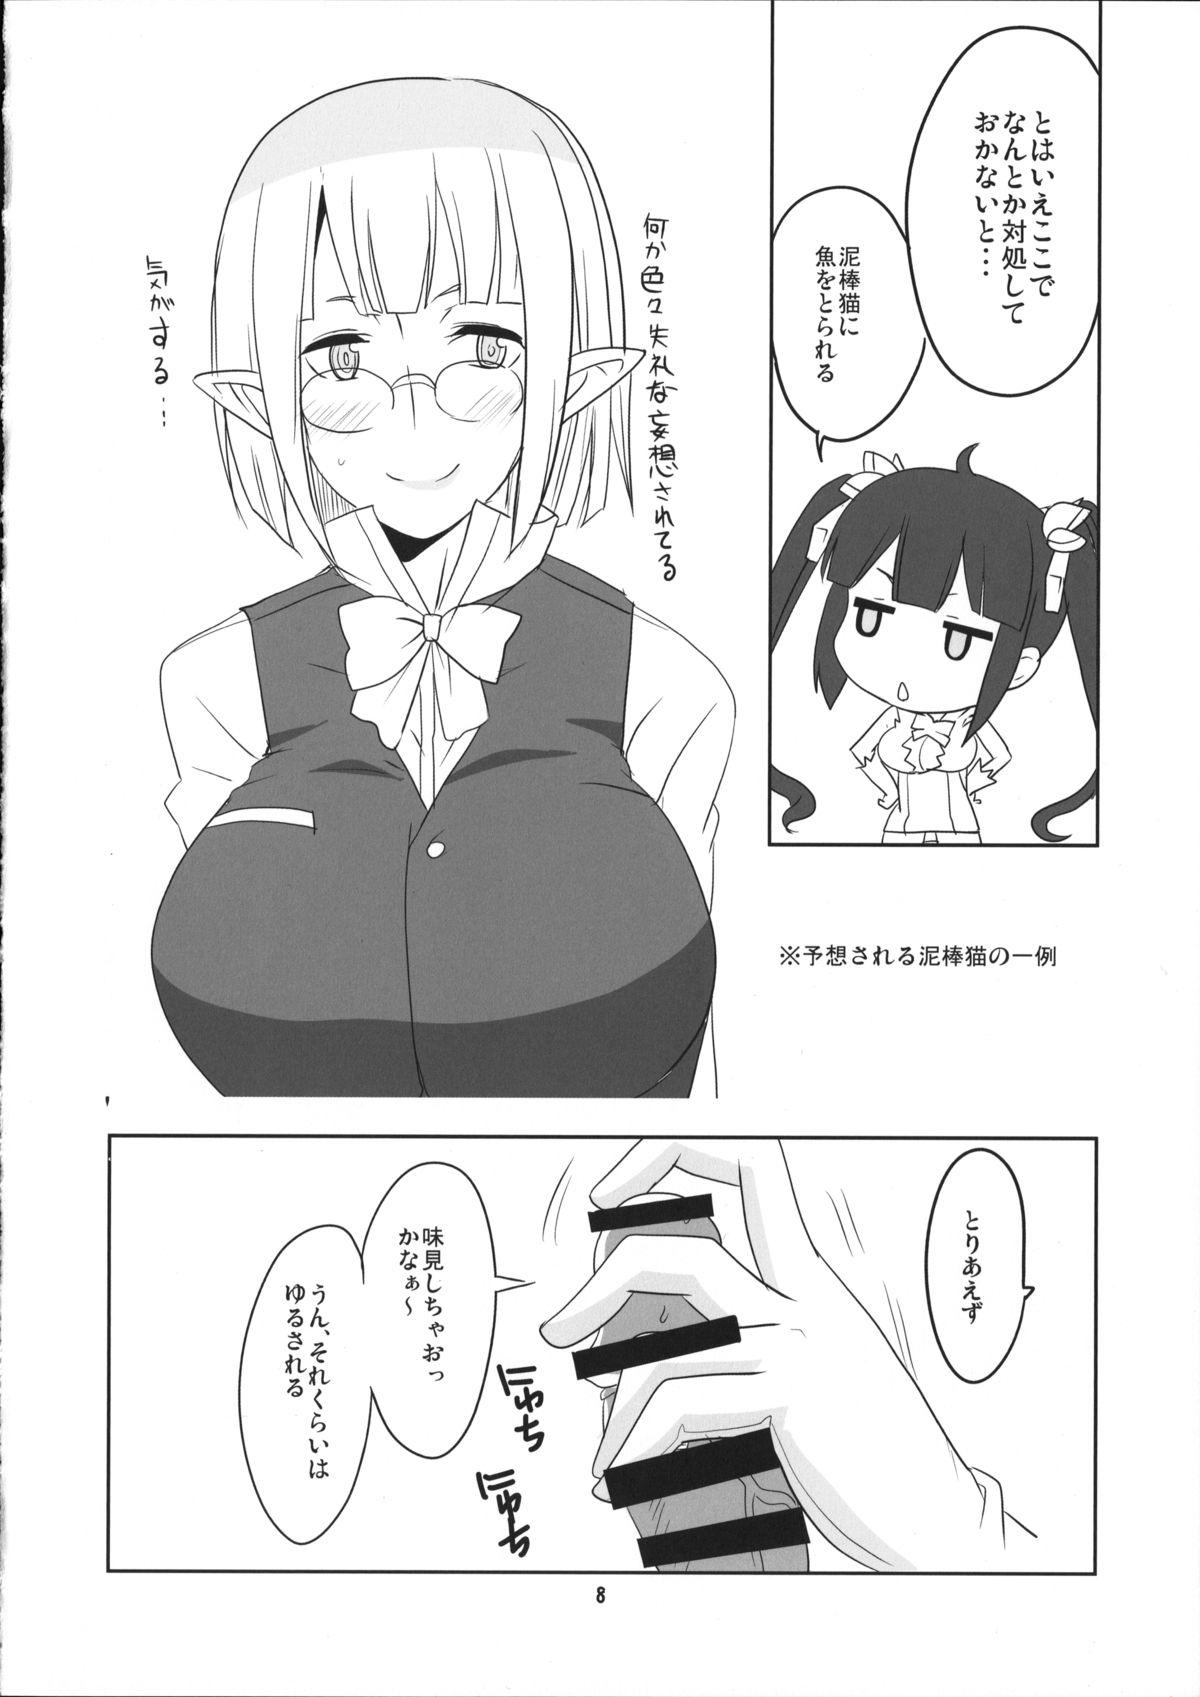 Sister Kami-sama Shinkouchuu! - Dungeon ni deai o motomeru no wa machigatteiru darou ka Sofa - Page 9